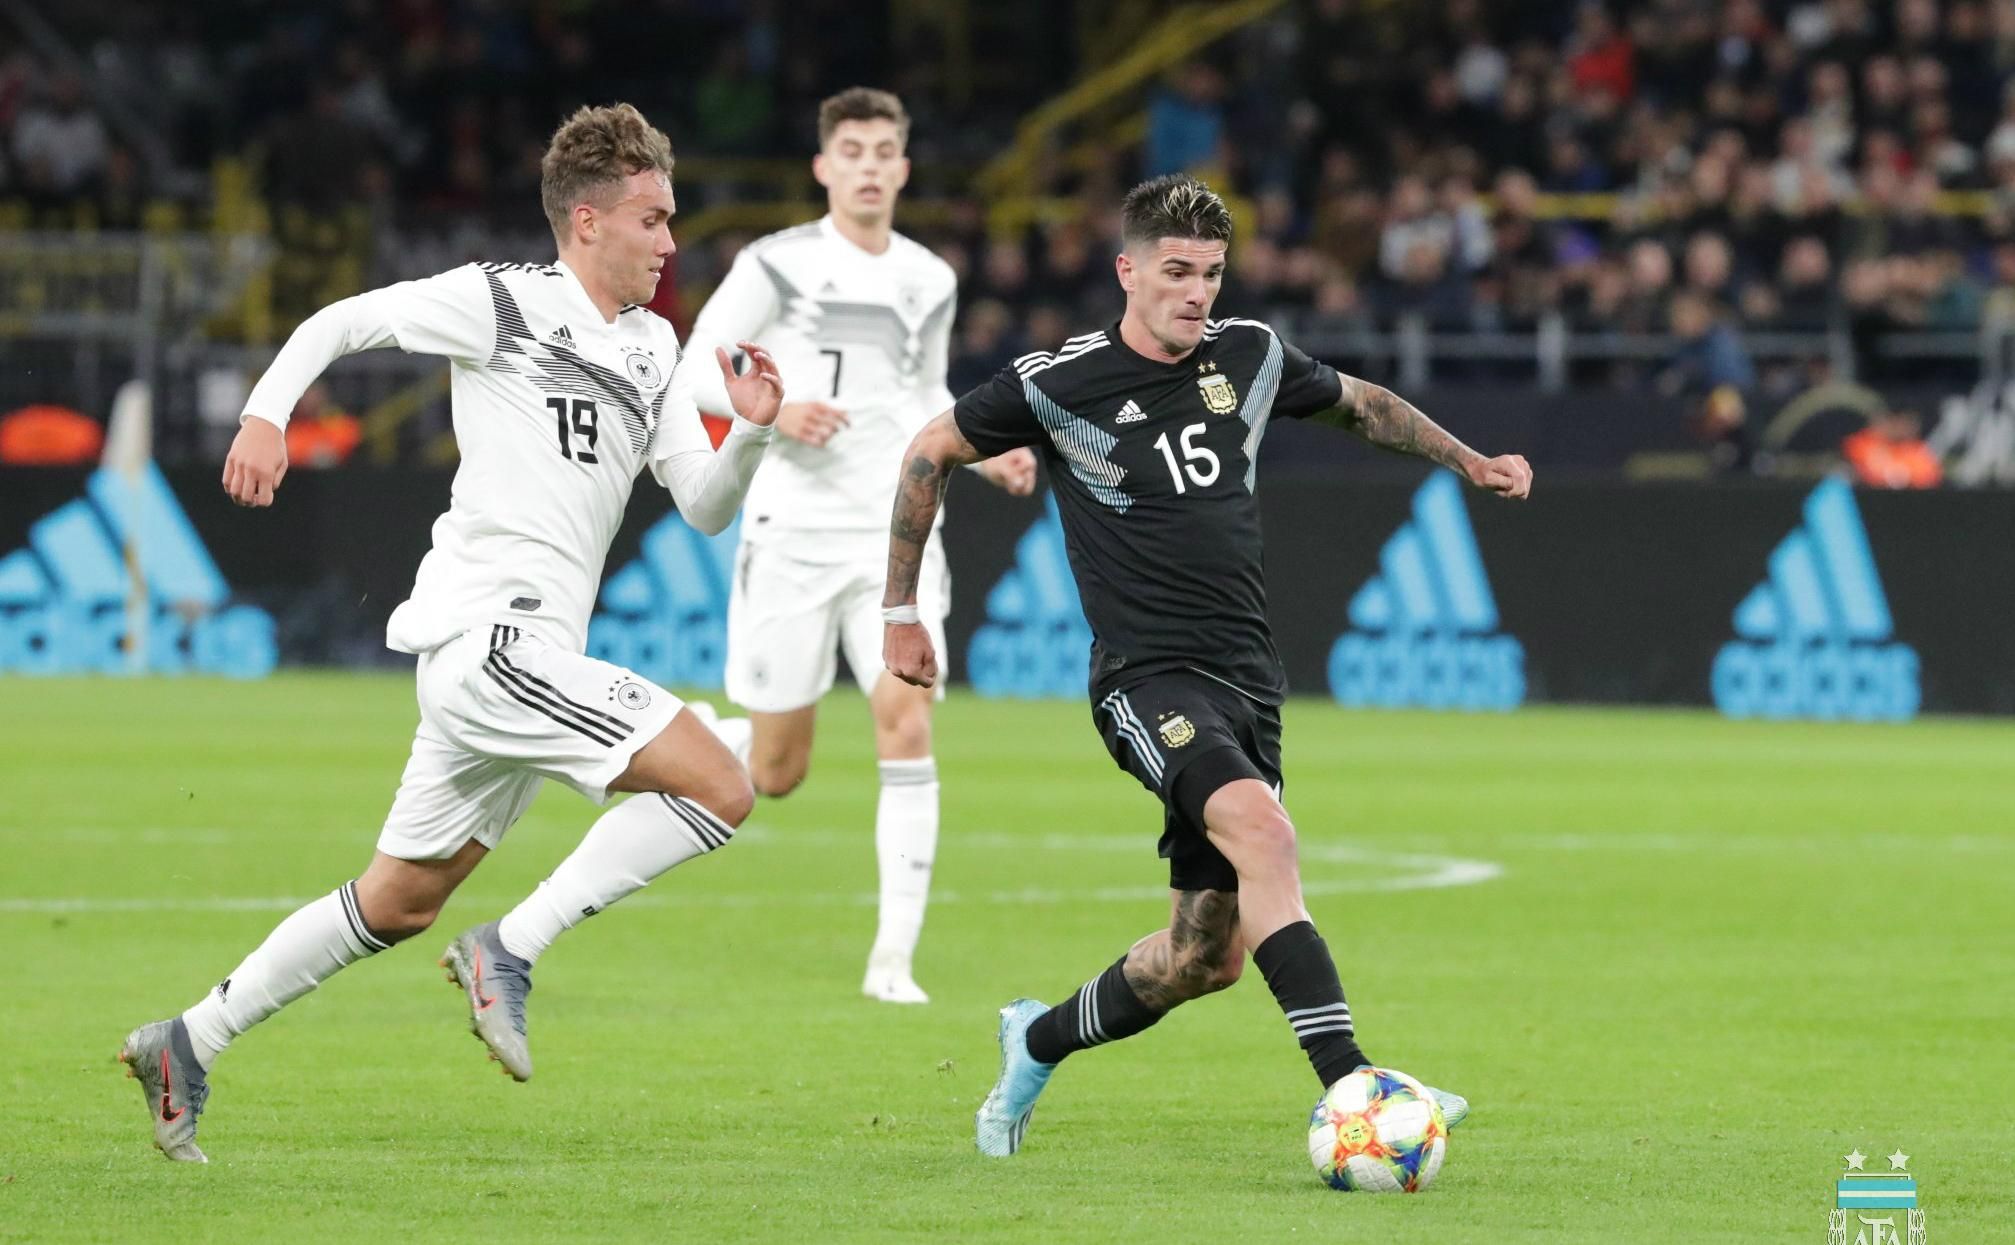 Аргентина ефектно врятувала нічию у матчі проти Німеччини, програючи 2:0 (відео)